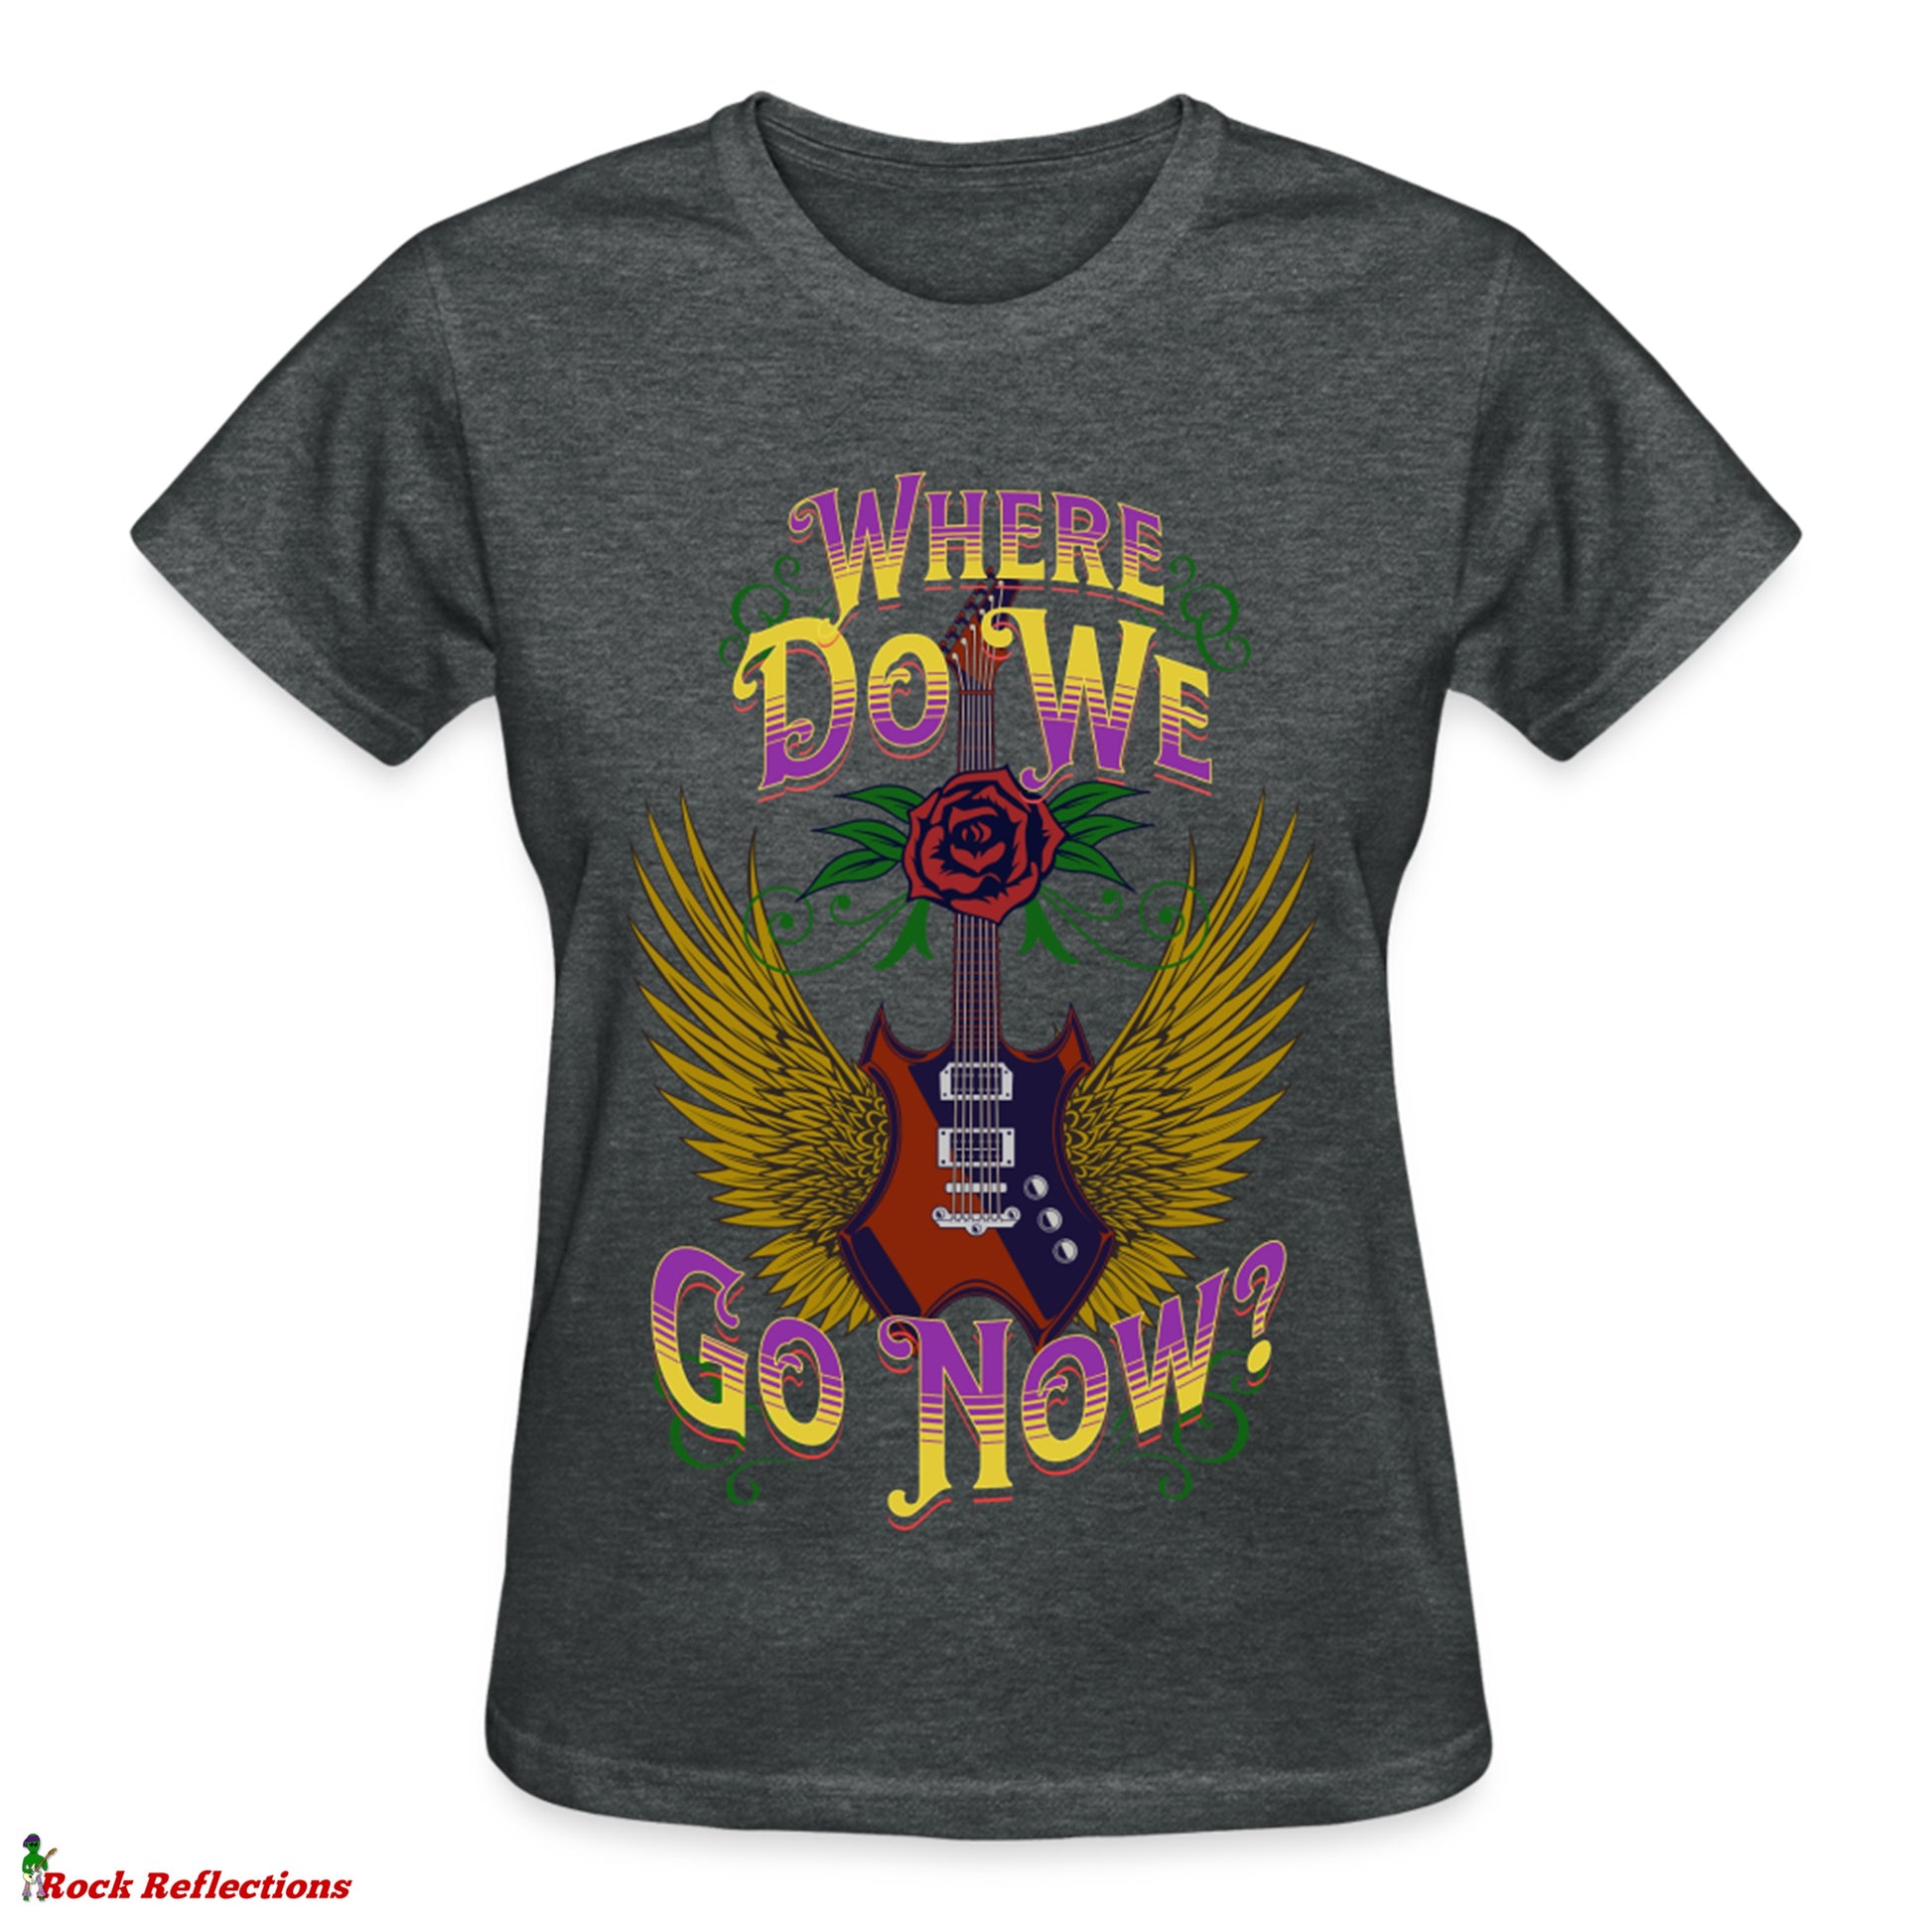 Where Do We Go Now? T-Shirt SPOD